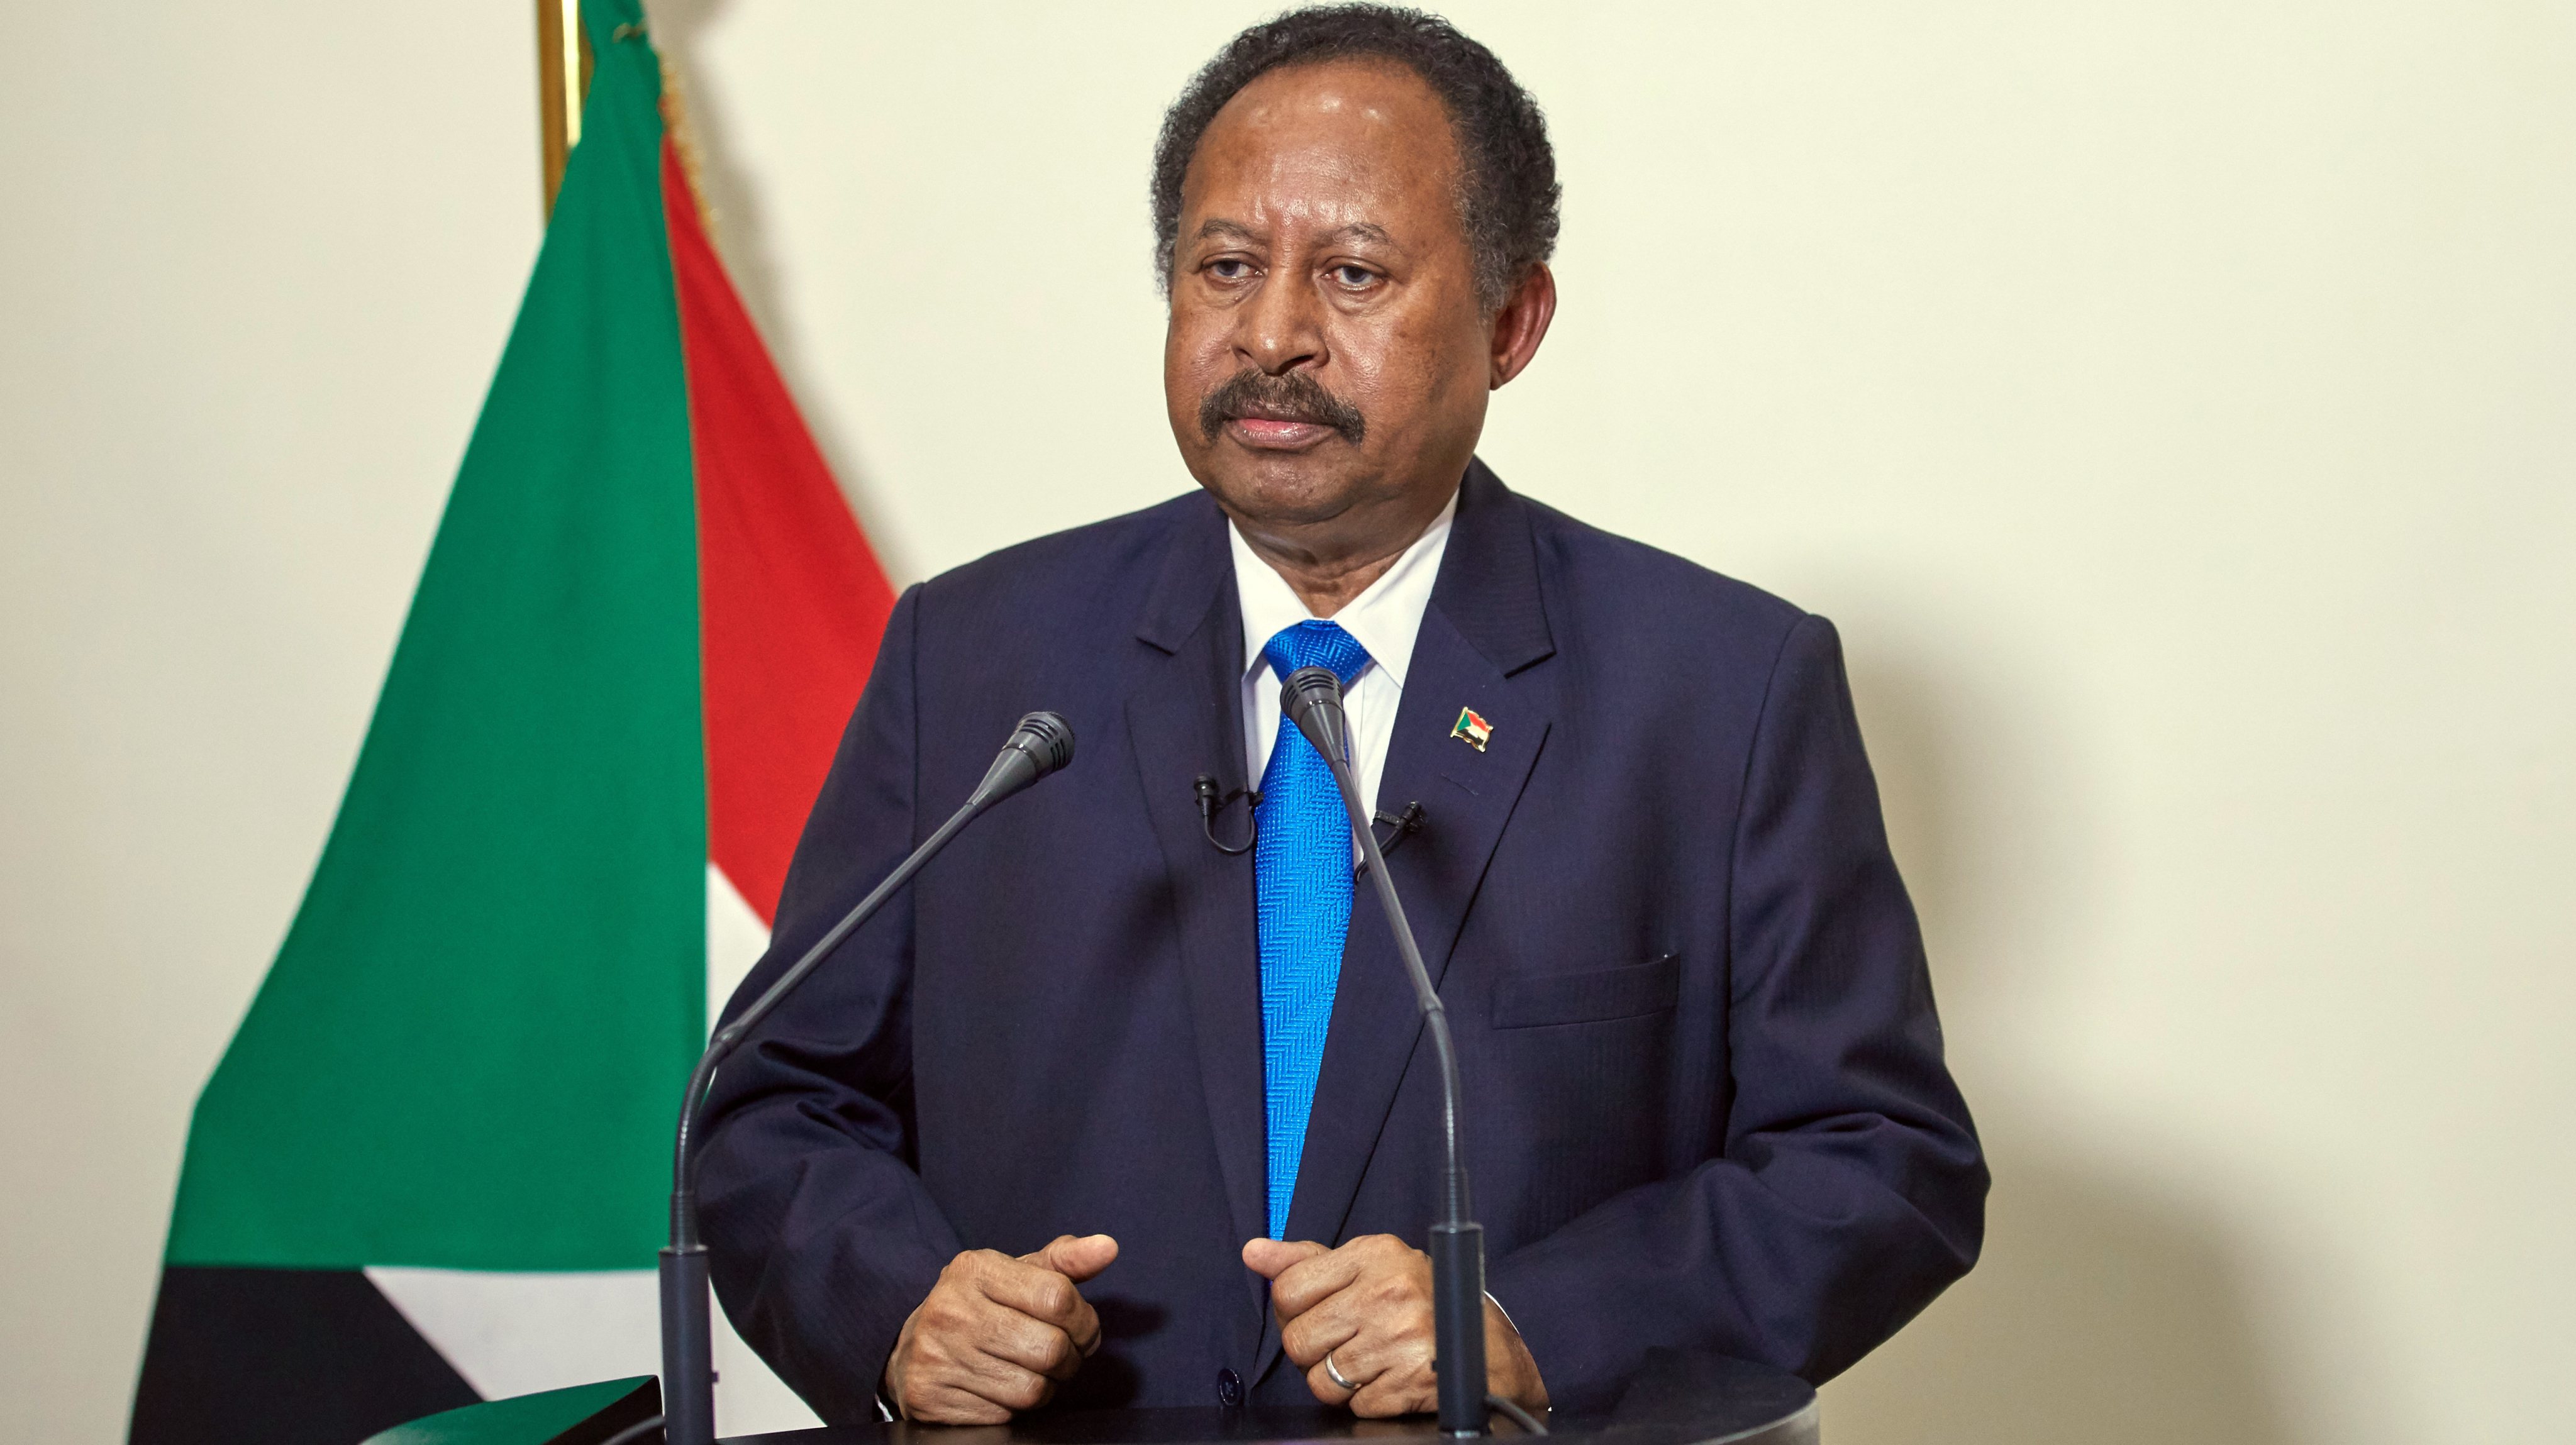 Prime Minister of Sudan, Abdalla Hamdok